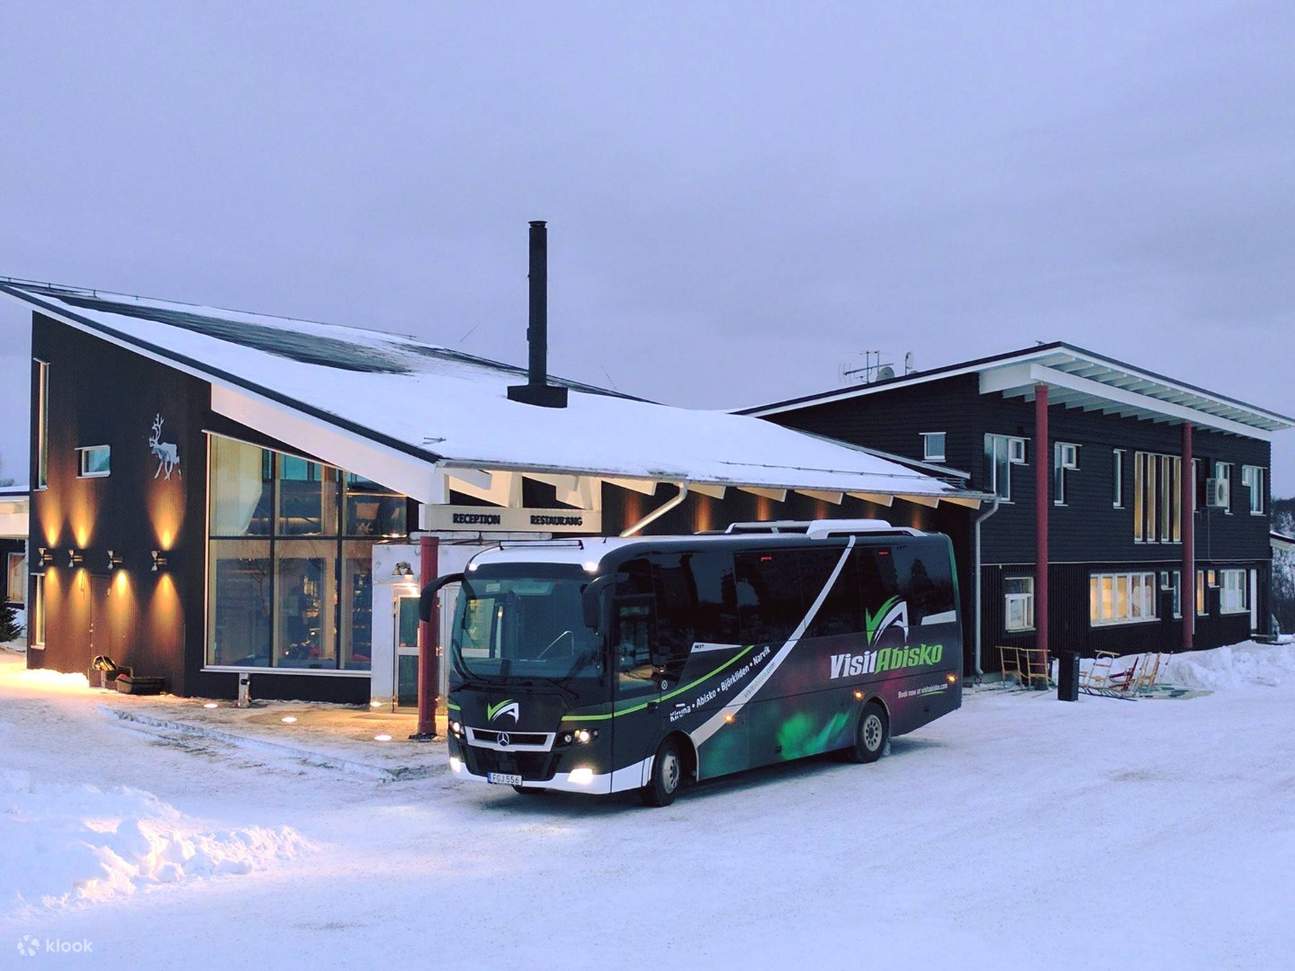 比亚迪向瑞典公交运营商交付首批45台纯电动巴士-汽车论坛-麻辣社区